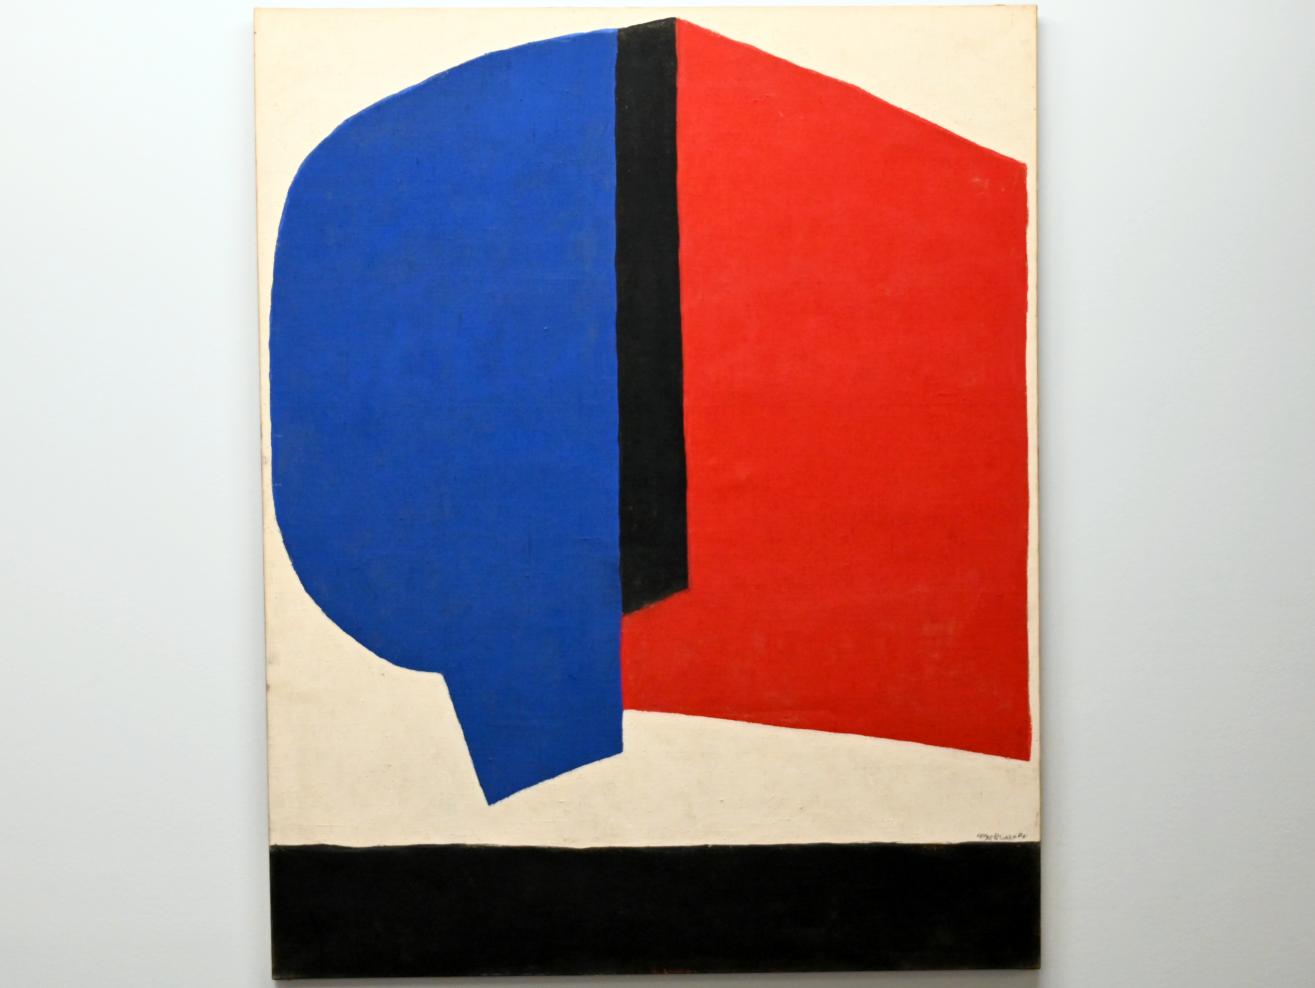 Serge Poliakoff (1936–1968), Abstrakte Komposition, Chemnitz, Museum Gunzenhauser, Saal 2.1 - Serge Poliakoff, 1968, Bild 1/2